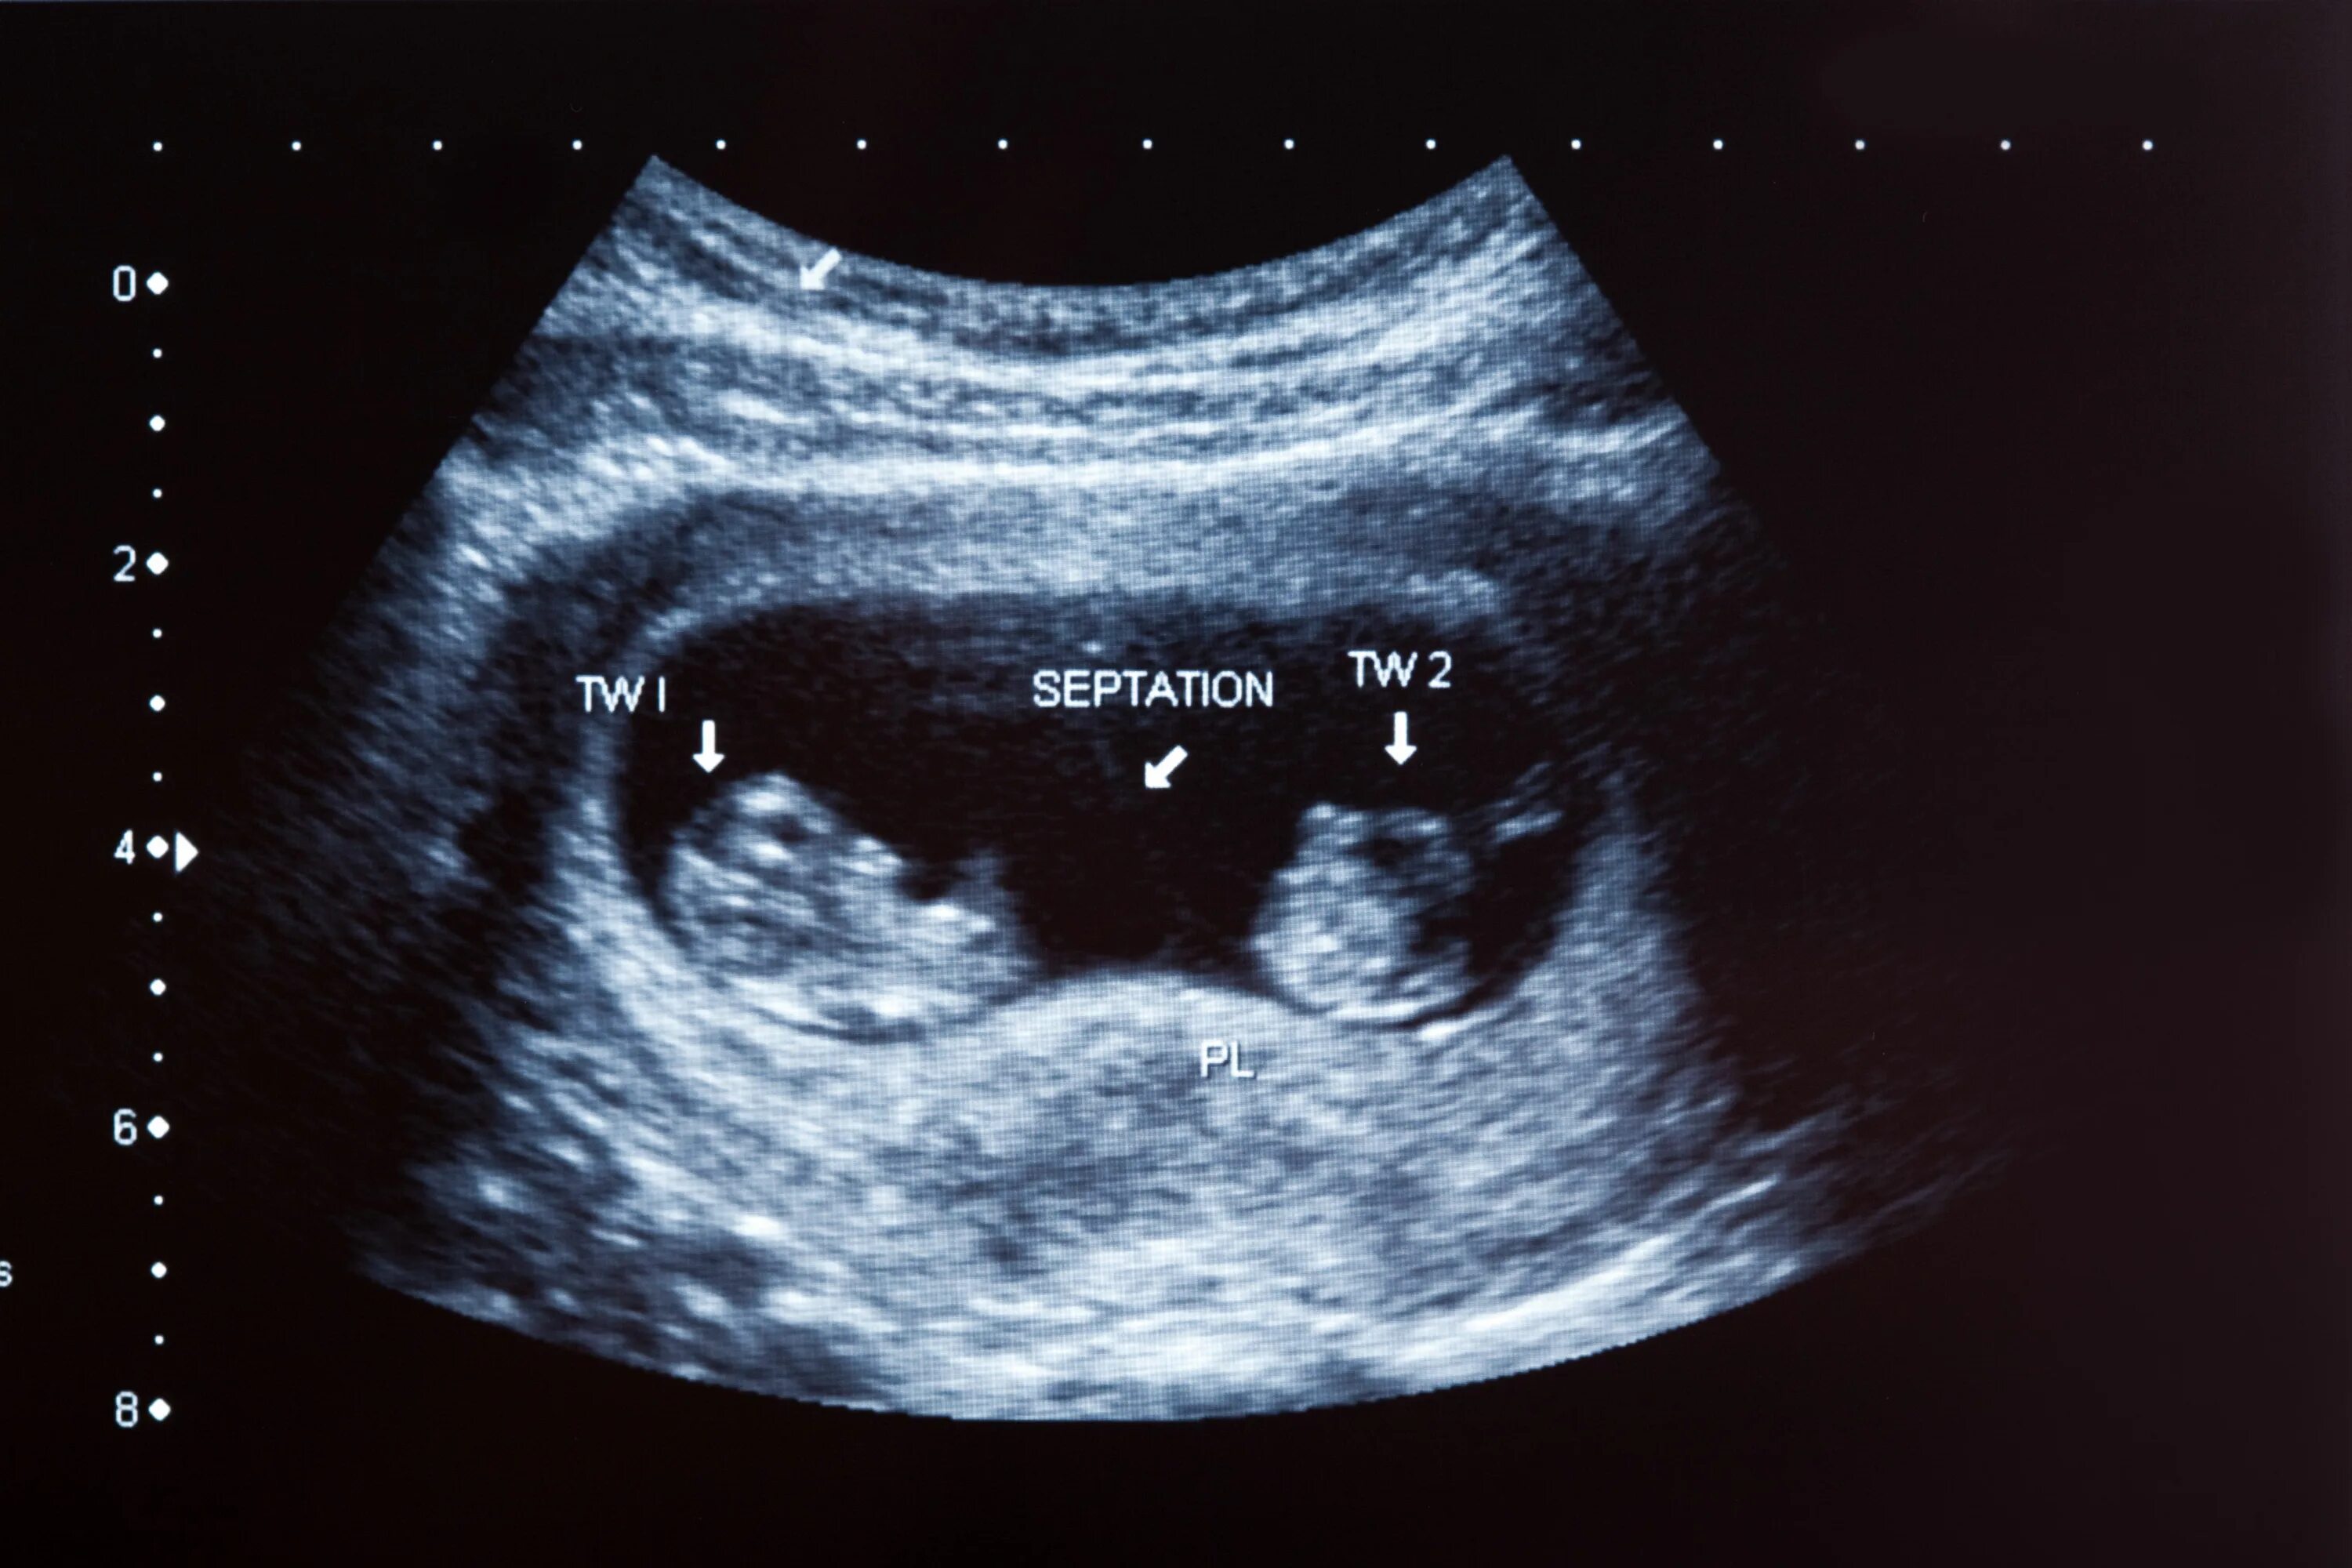 УЗИ 12 недель беременности двойня. УЗИ 10 недель беременности двойня. УЗИ 8 недель беременности двойня. УЗИ 20 недель беременности многоплодная беременность. Двойня 8 недель